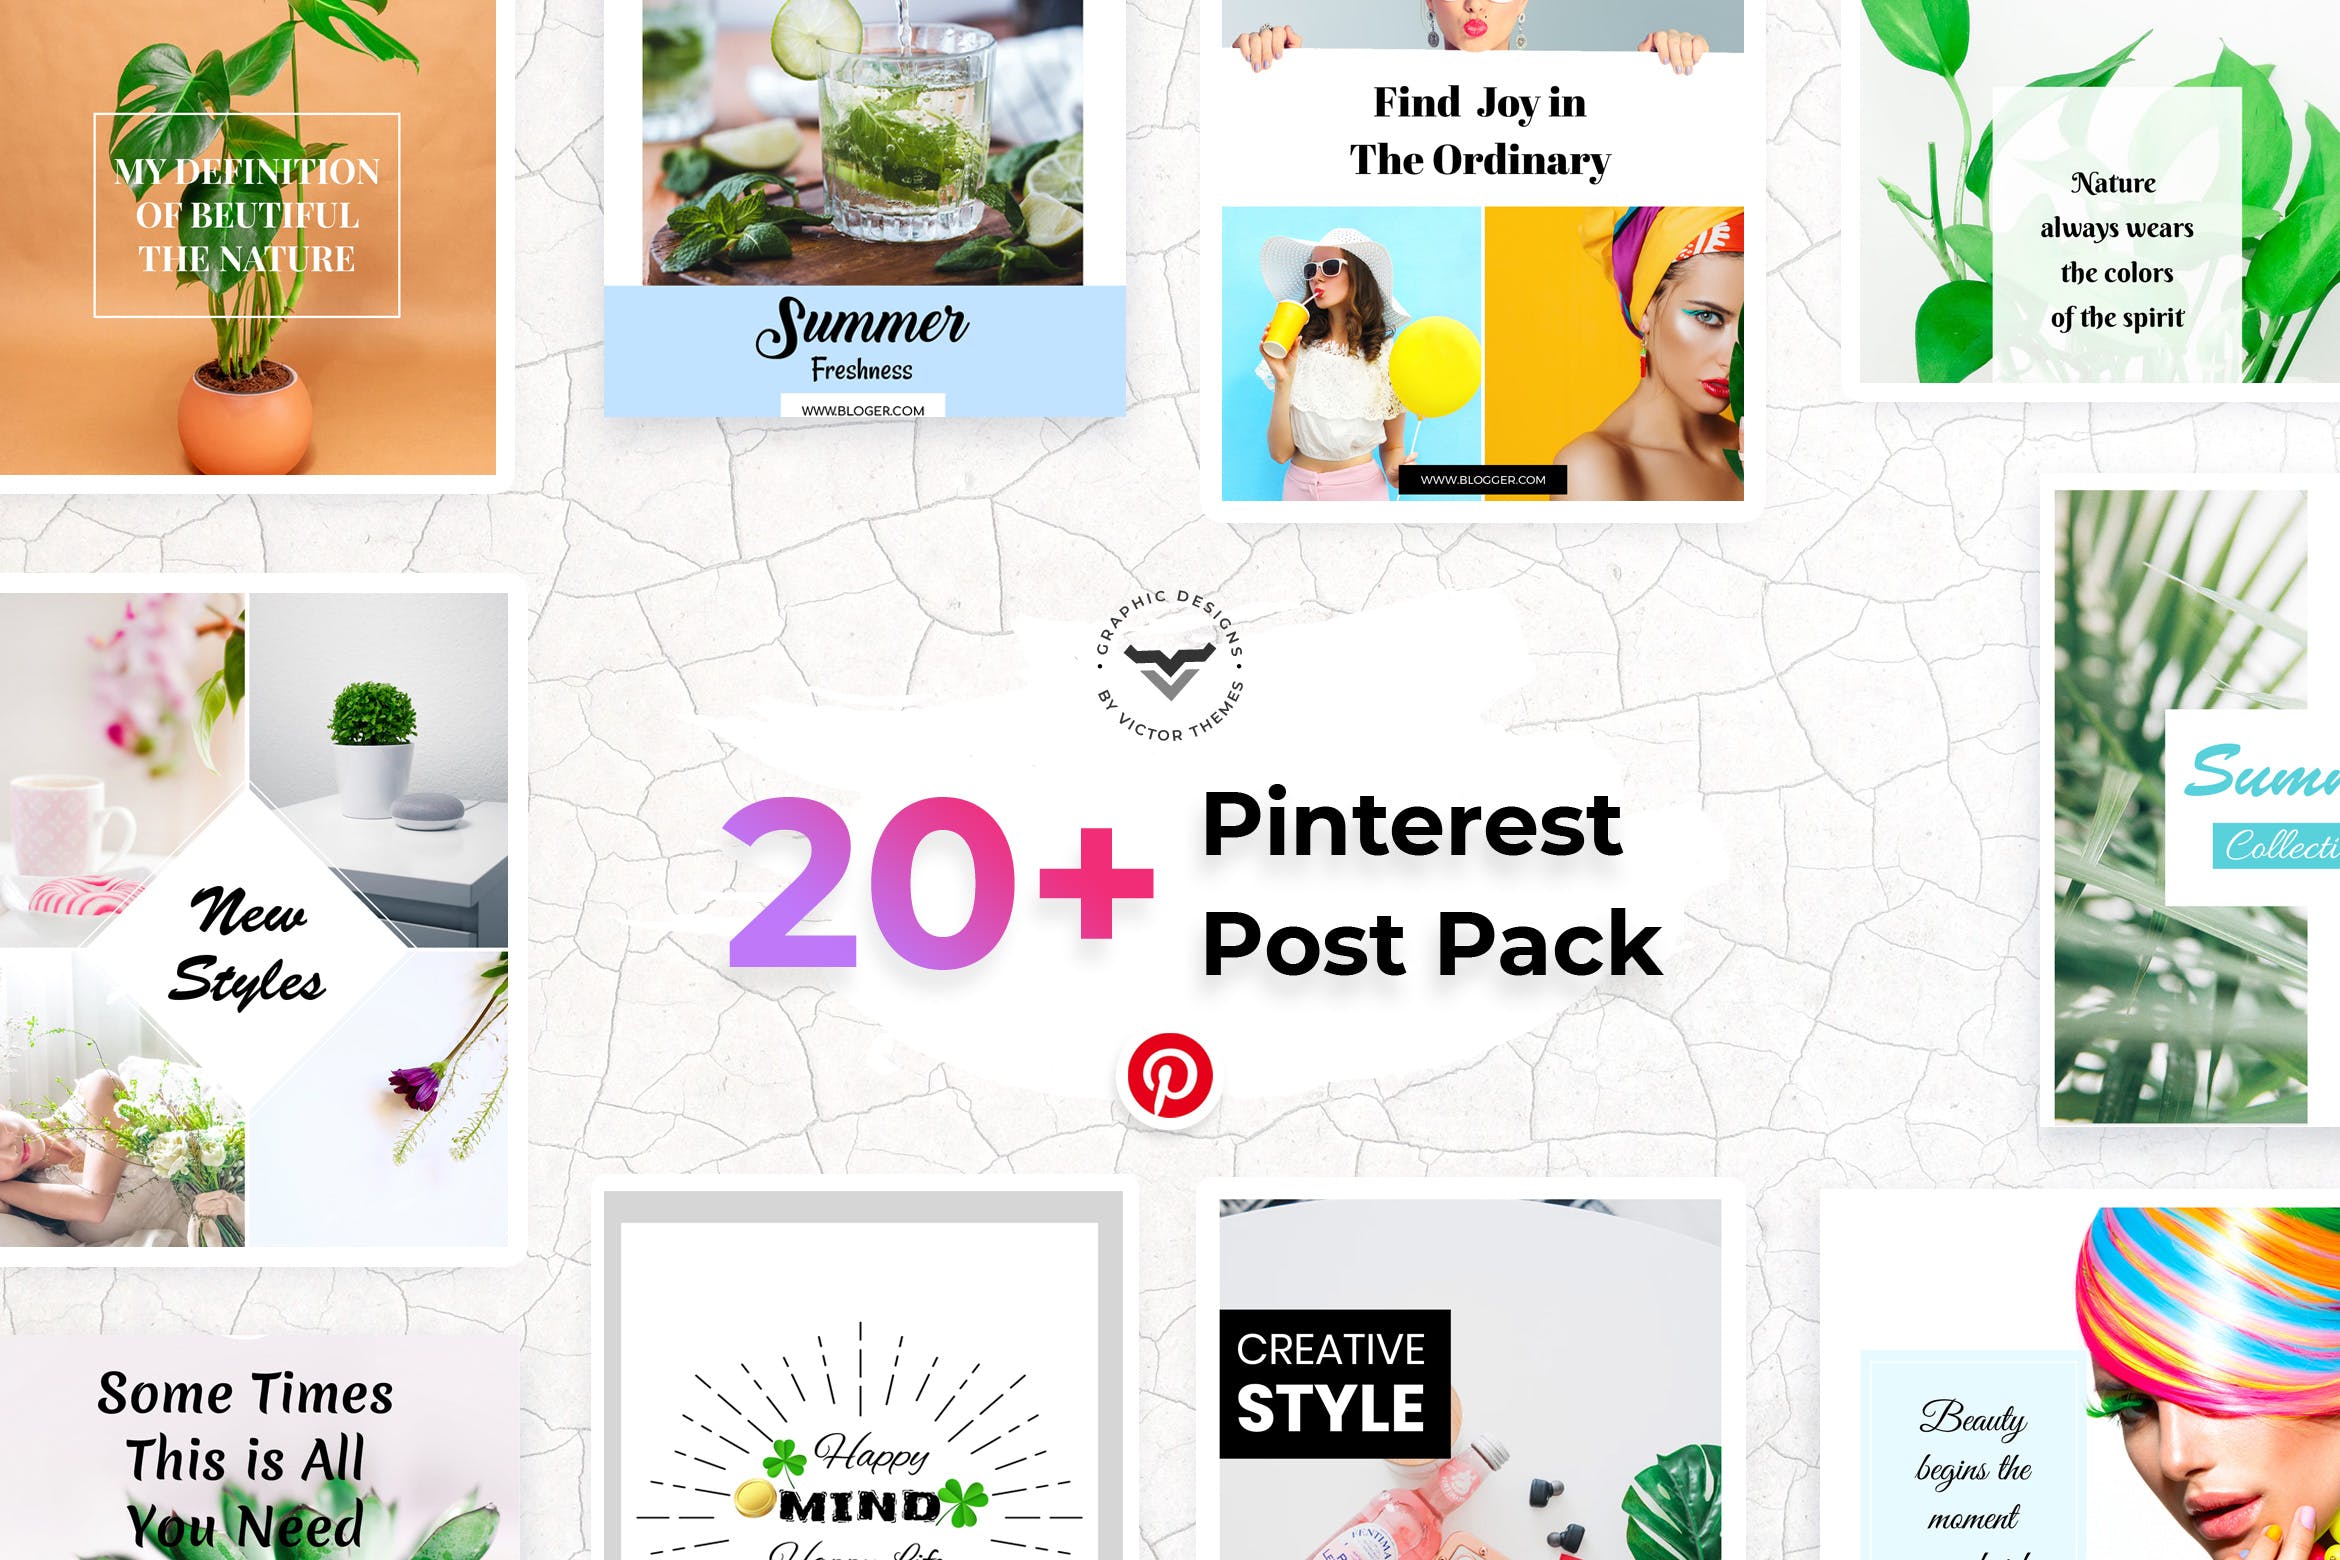 20+Pinterest社交网站文章配图设计模板蚂蚁素材精选 Pinterest Social Media Templates插图